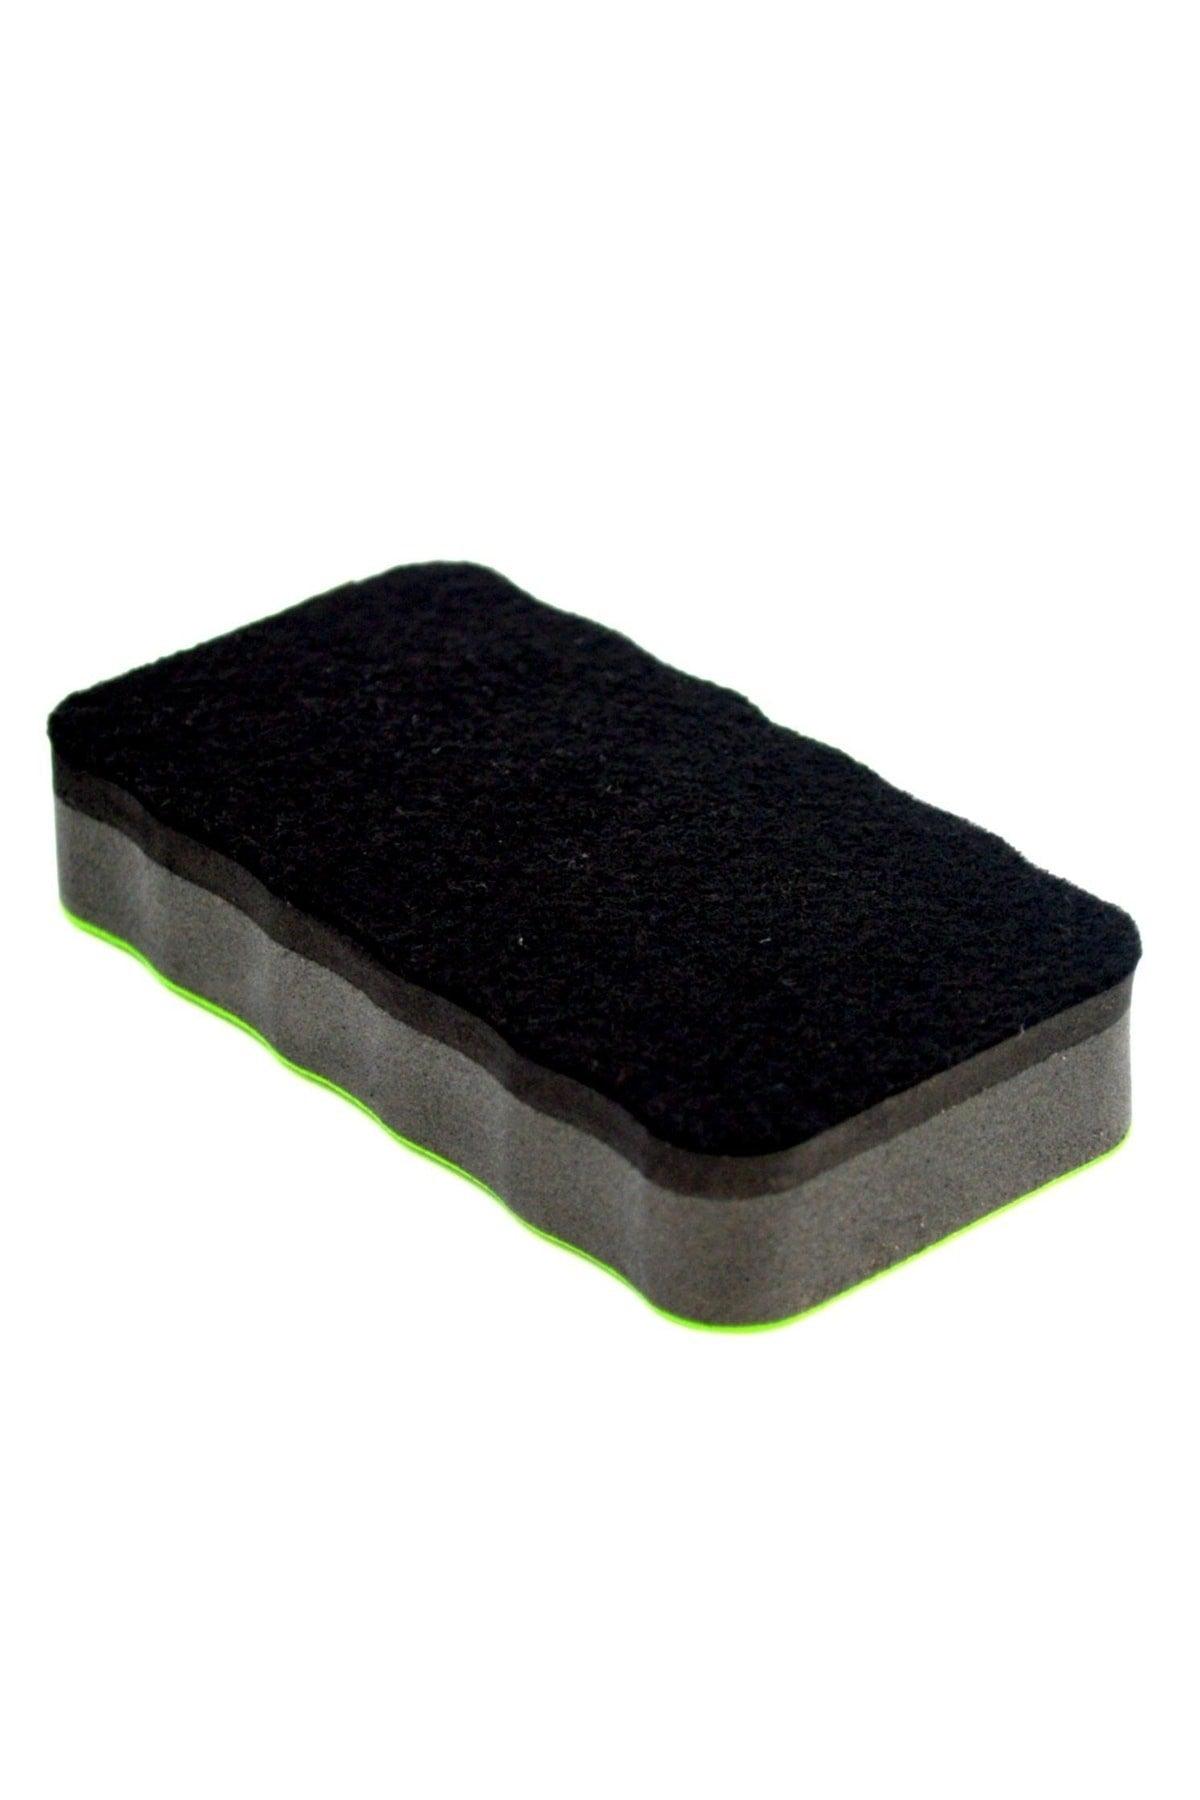 Magnetic Blackboard Eraser 1 Piece Blue